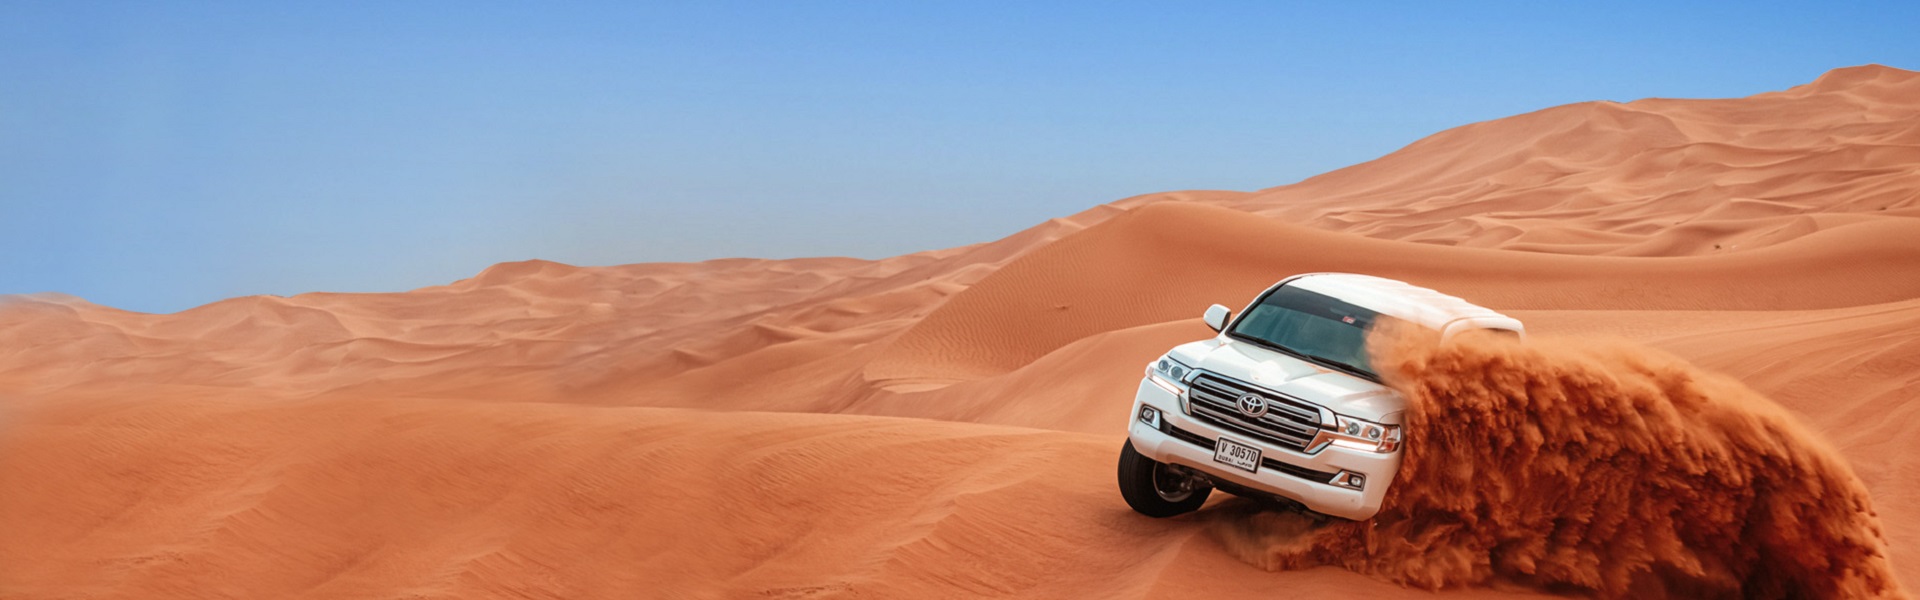 Rent a car Kraljevo | Desert safari in Dubai